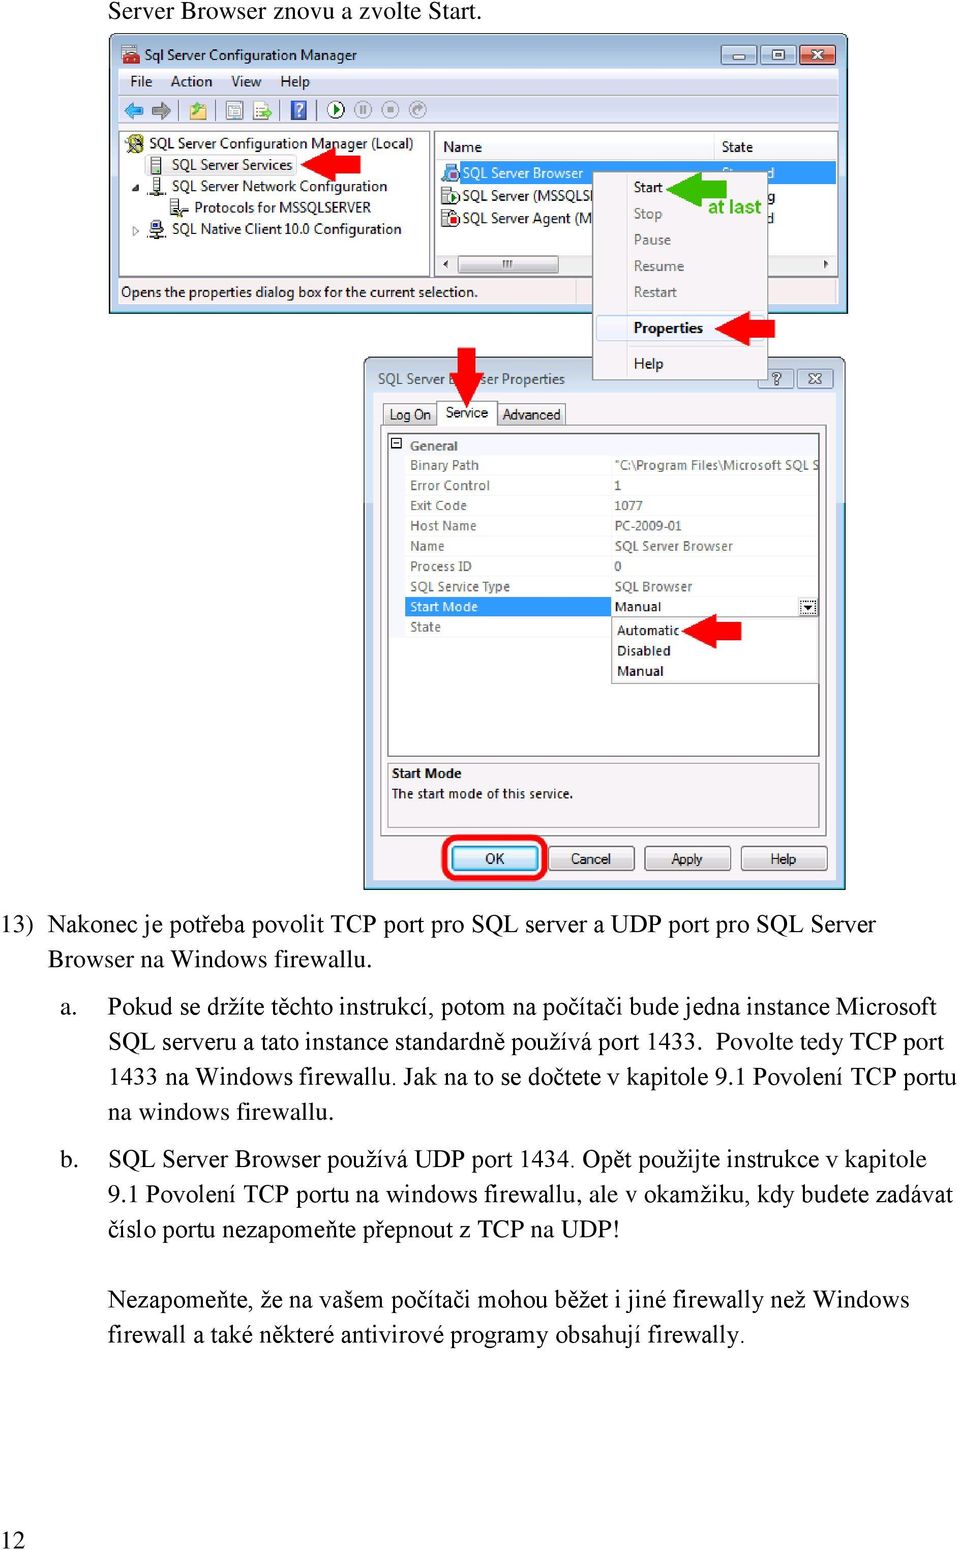 Opět použijte instrukce v kapitole 9.1 Povolení TCP portu na windows firewallu, ale v okamžiku, kdy budete zadávat číslo portu nezapomeňte přepnout z TCP na UDP!